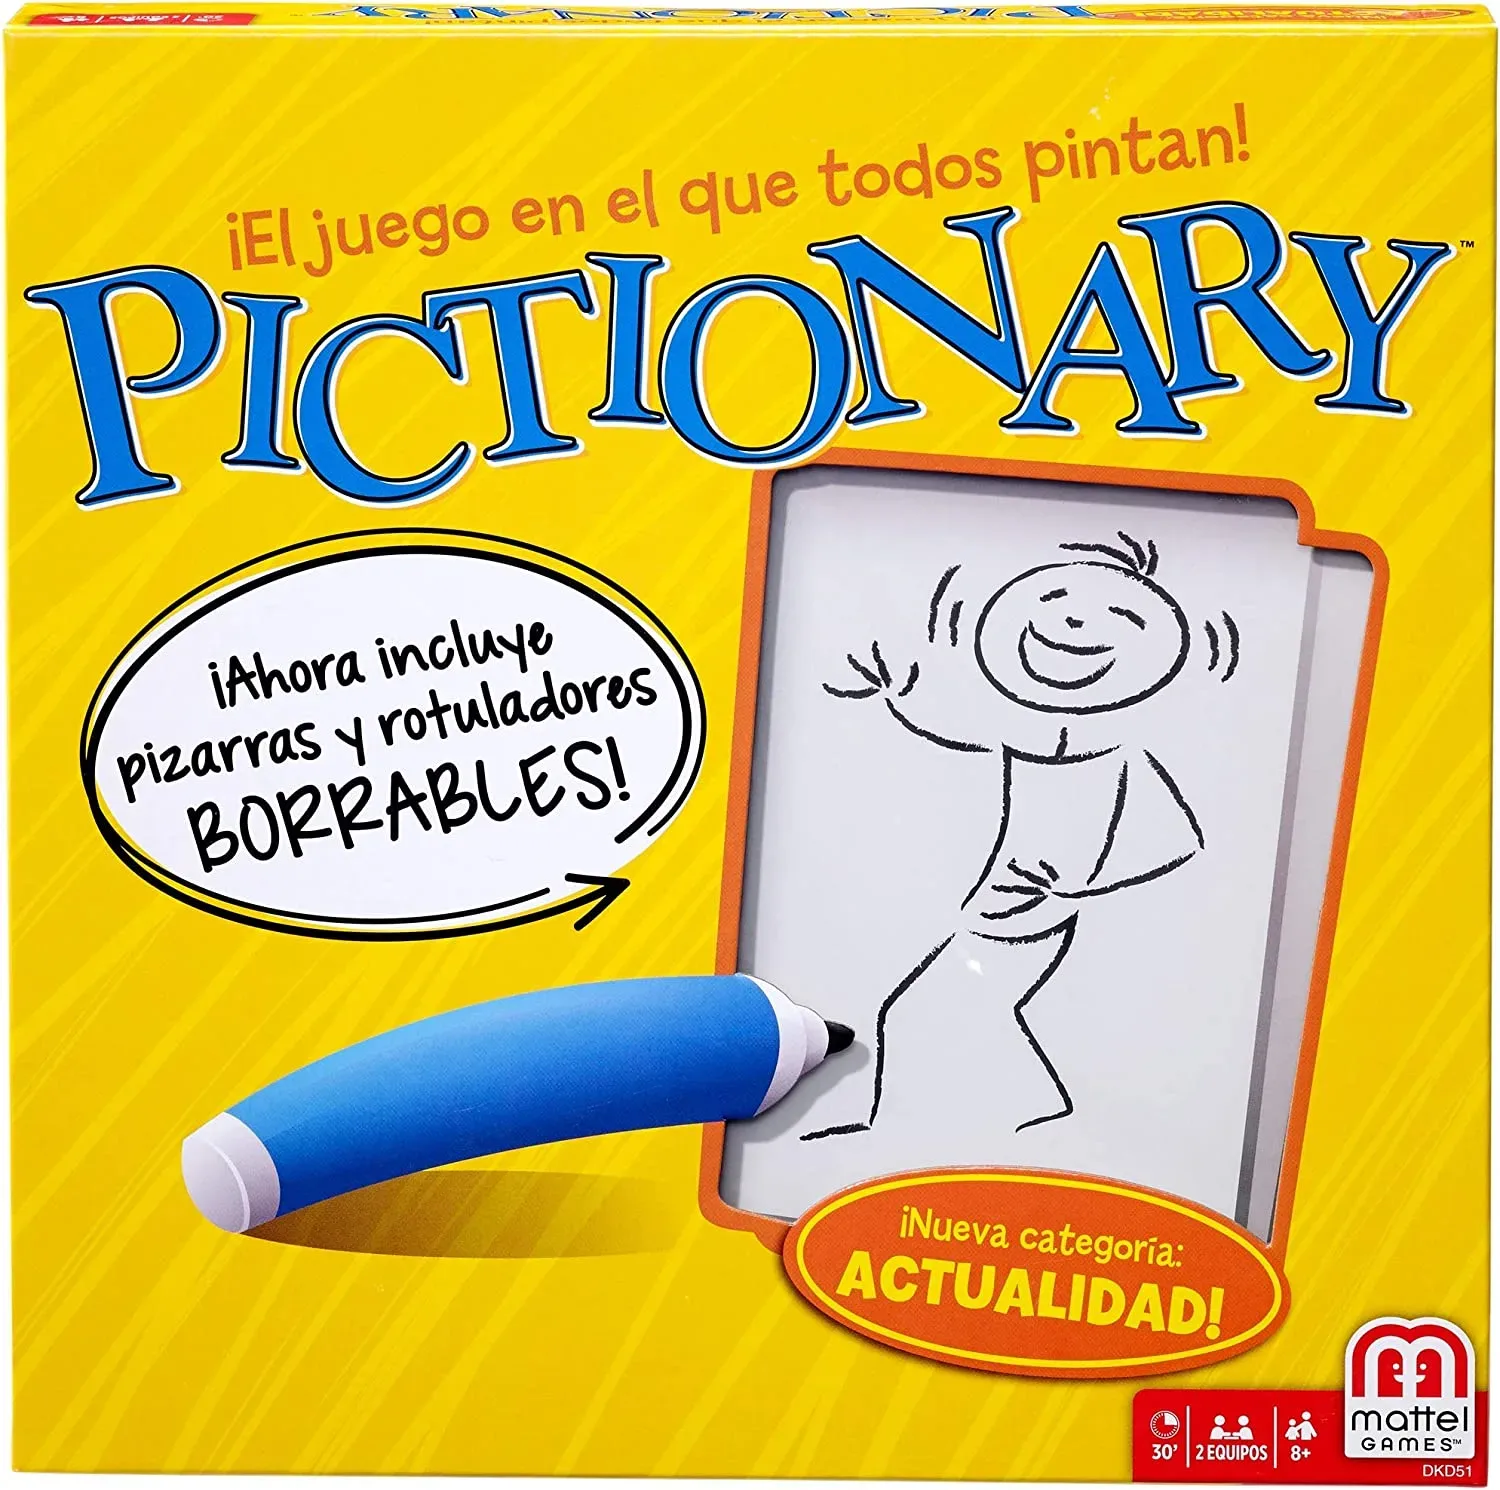 Ver categoría de pictionary